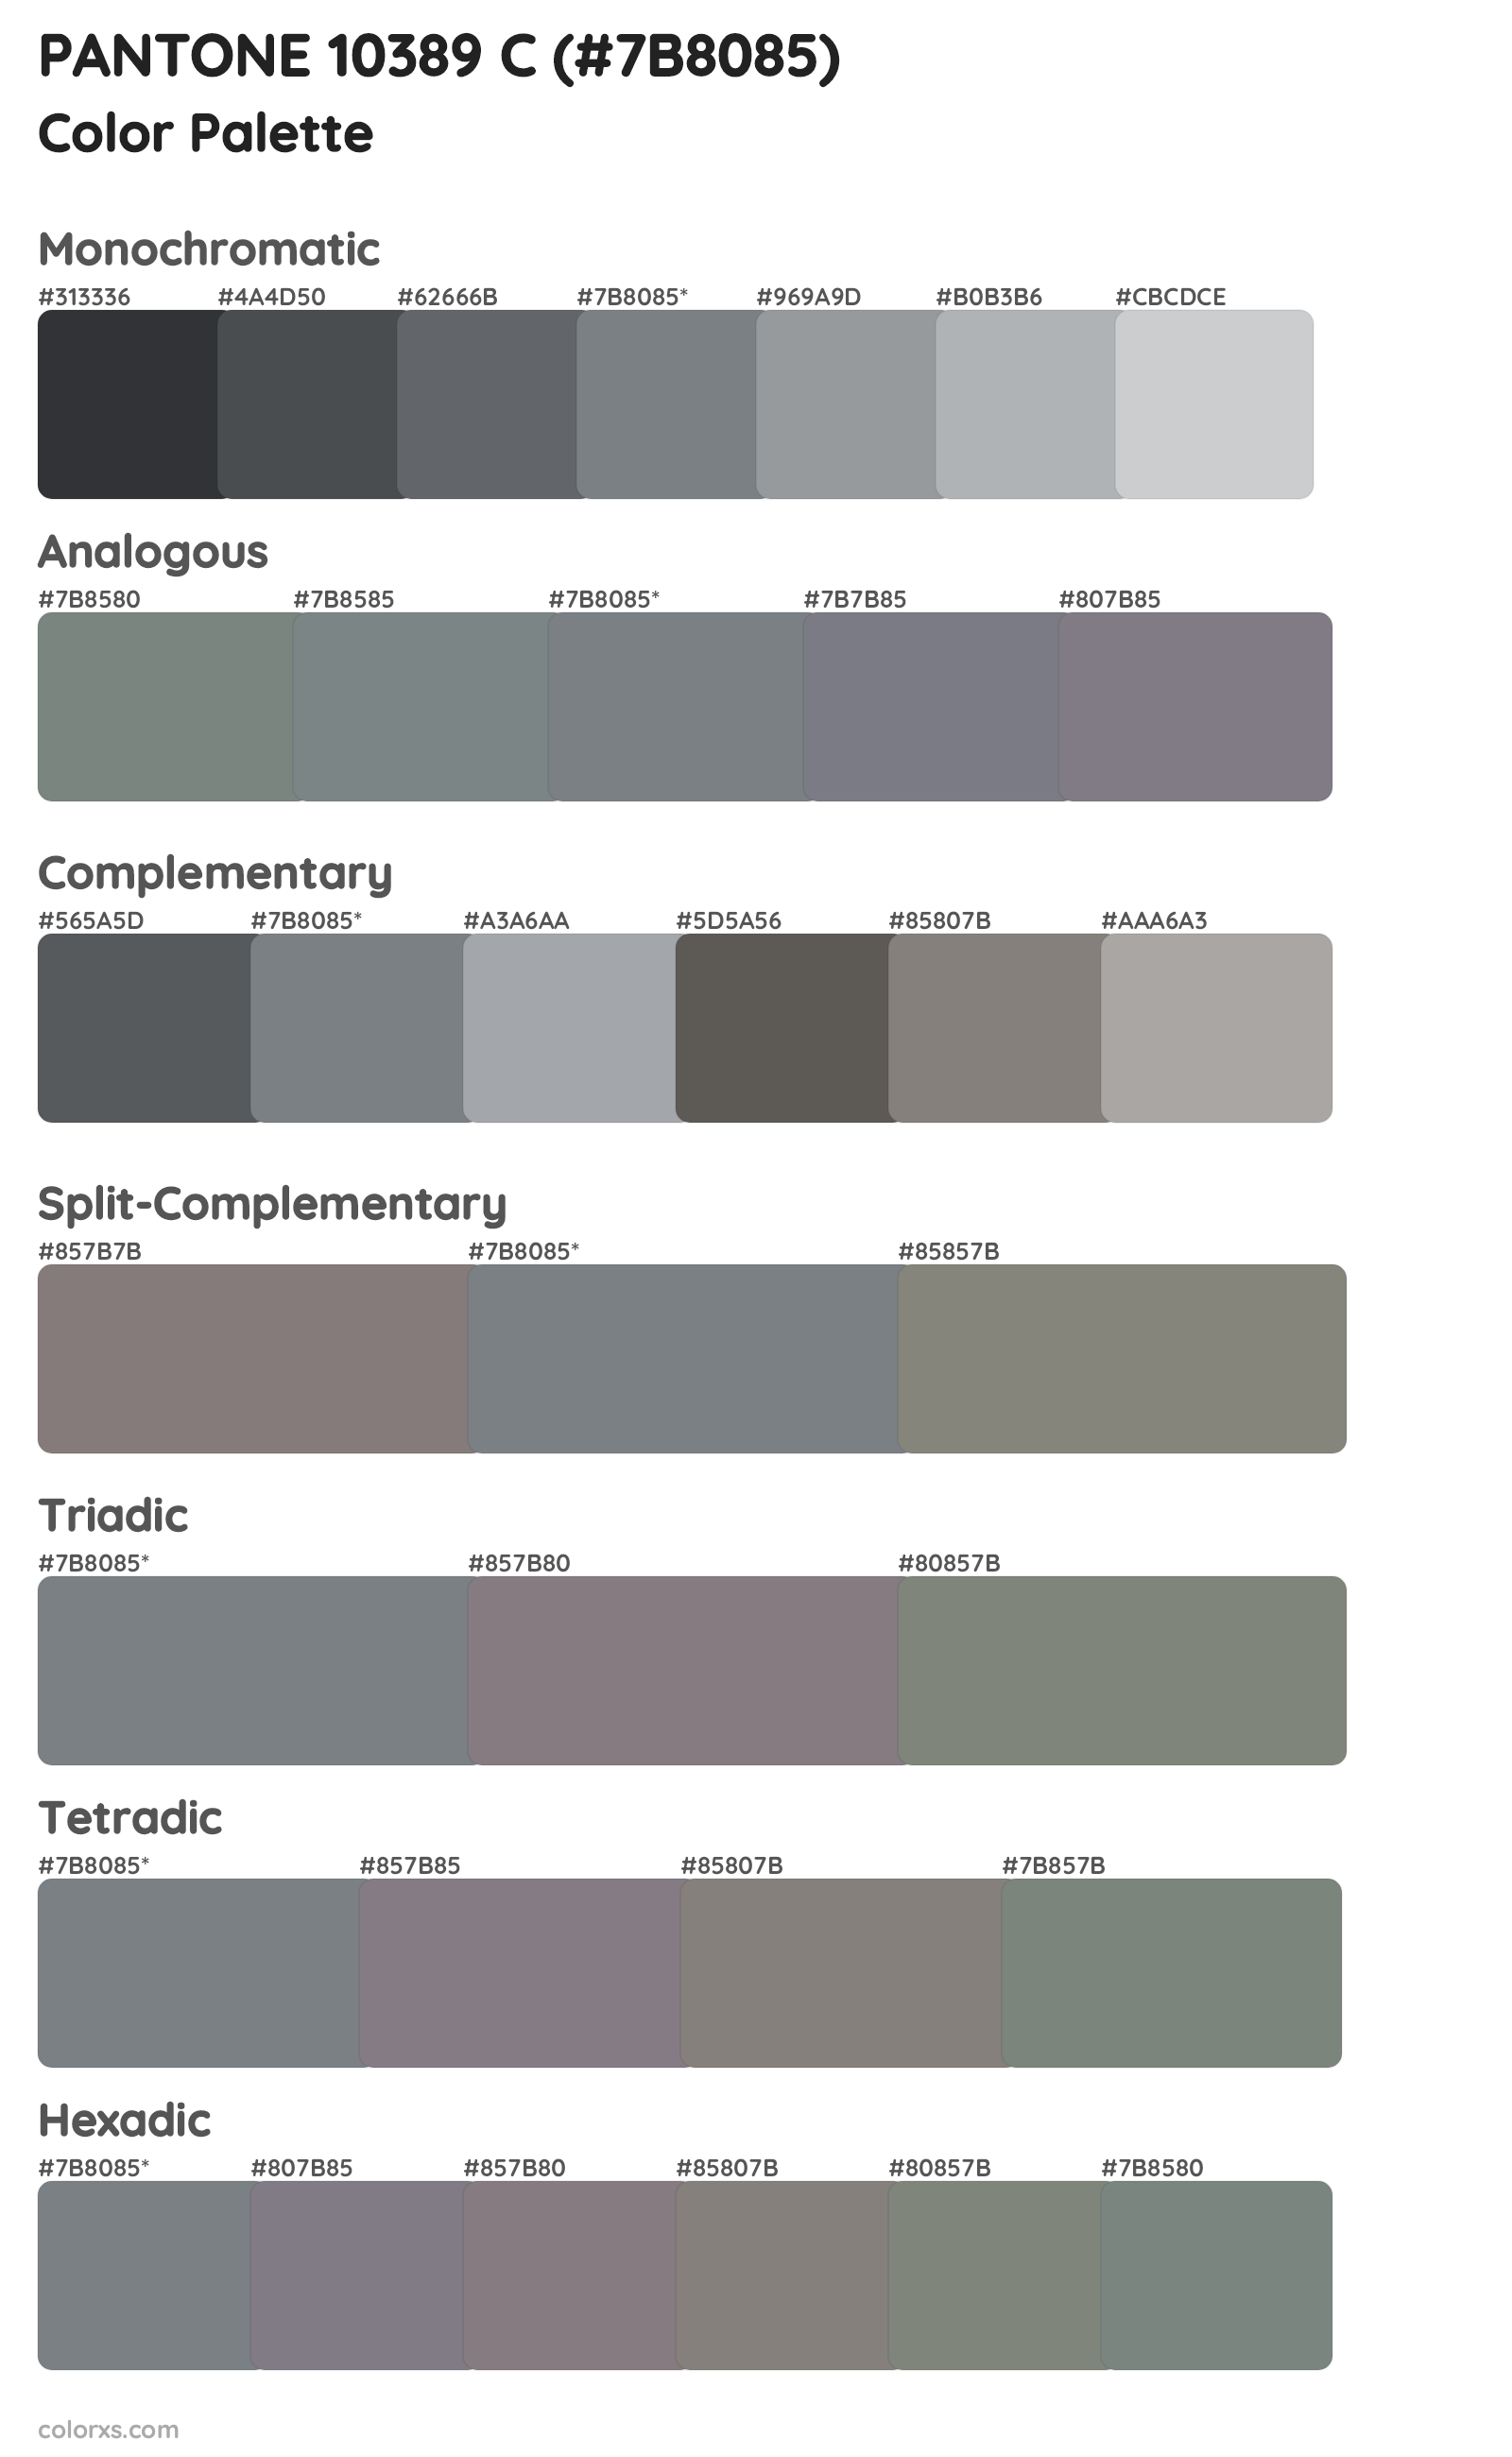 PANTONE 10389 C Color Scheme Palettes